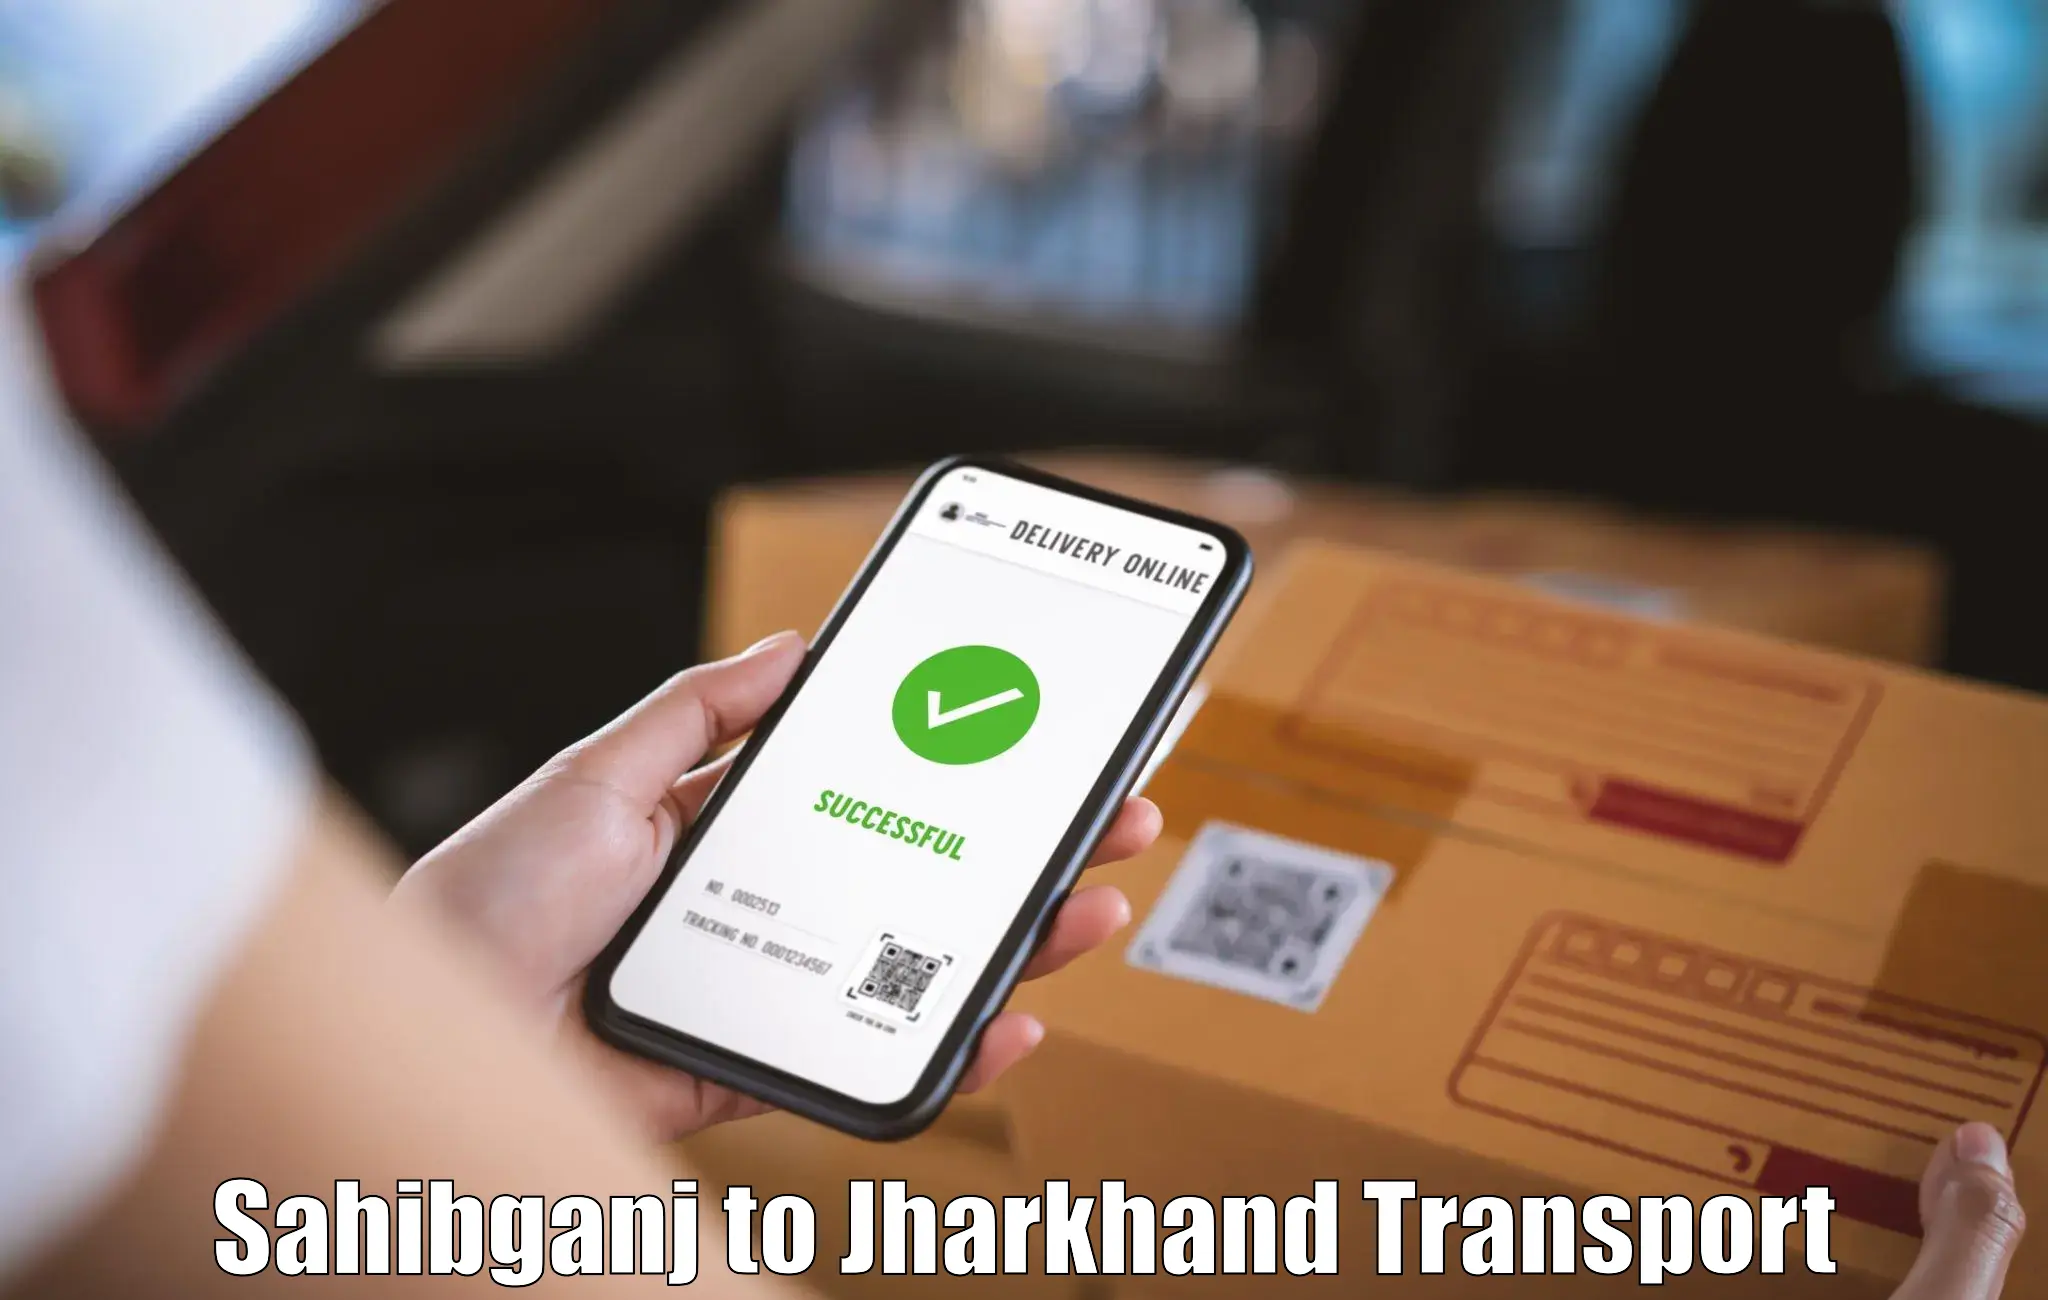 Daily transport service Sahibganj to Jharkhand